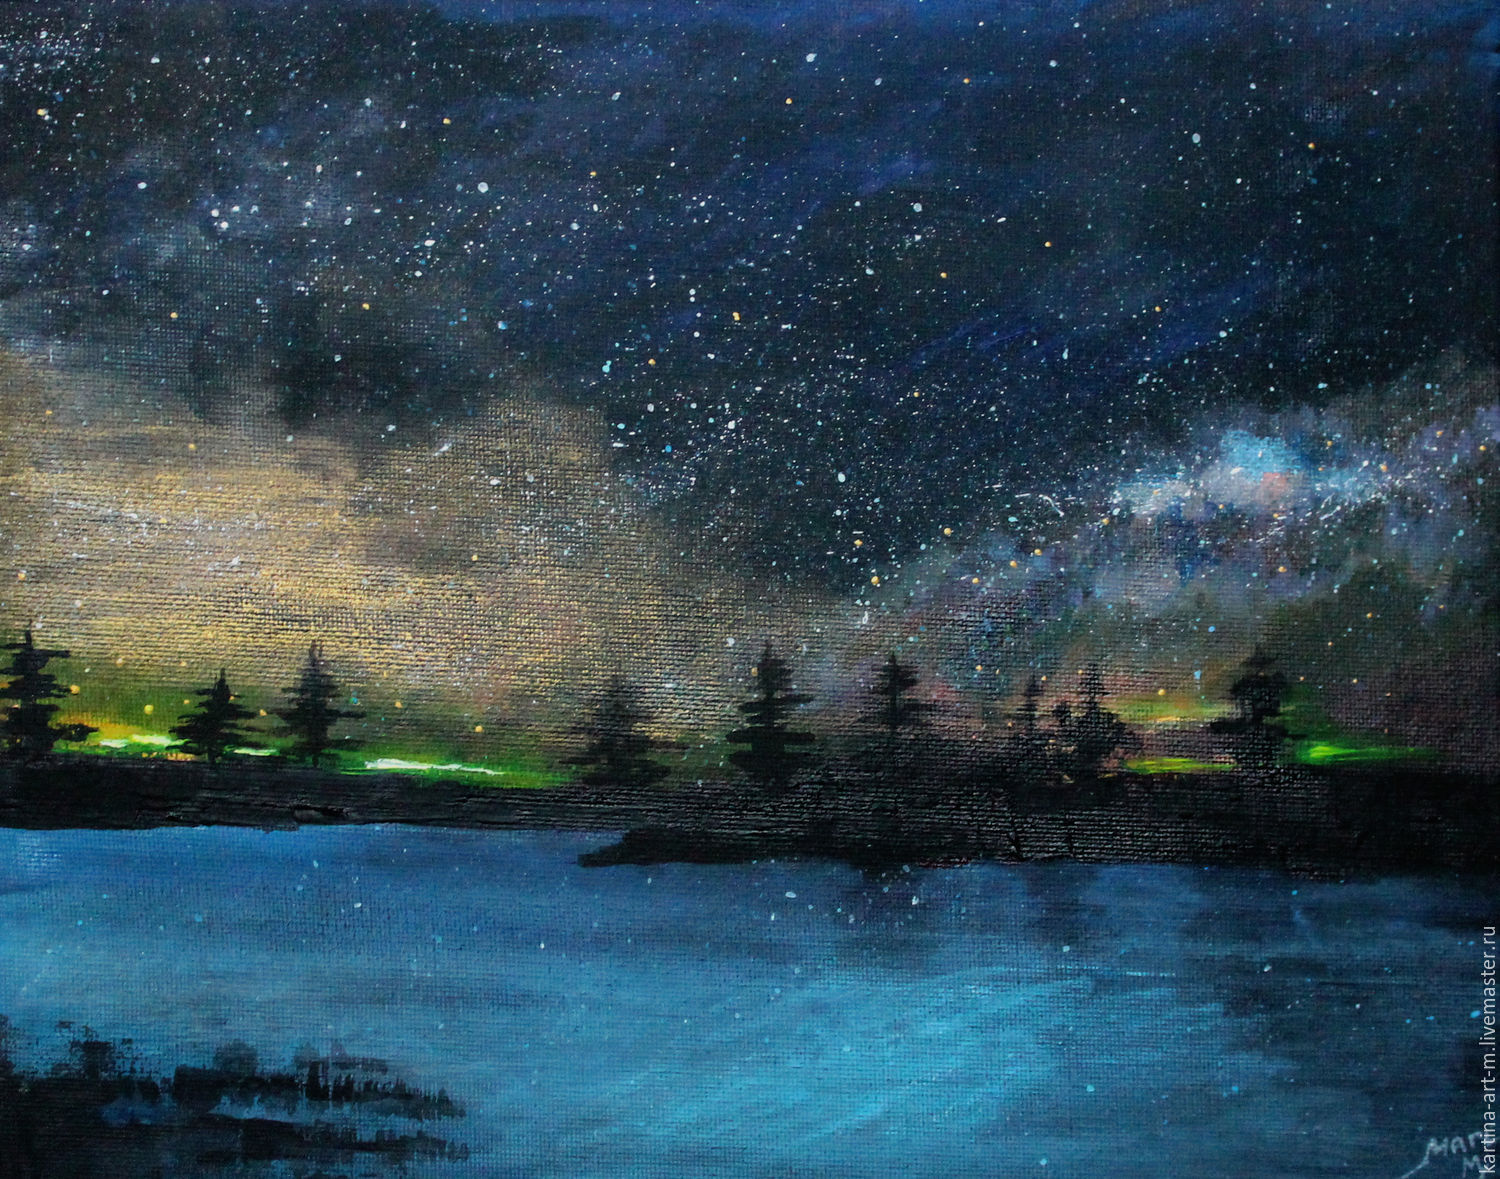 Художник небо звездное рисует составить предложение. Ночной пейзаж живопись. Картина ночь. Ночной пейзаж картина художника. Ночной пейзаж маслом.